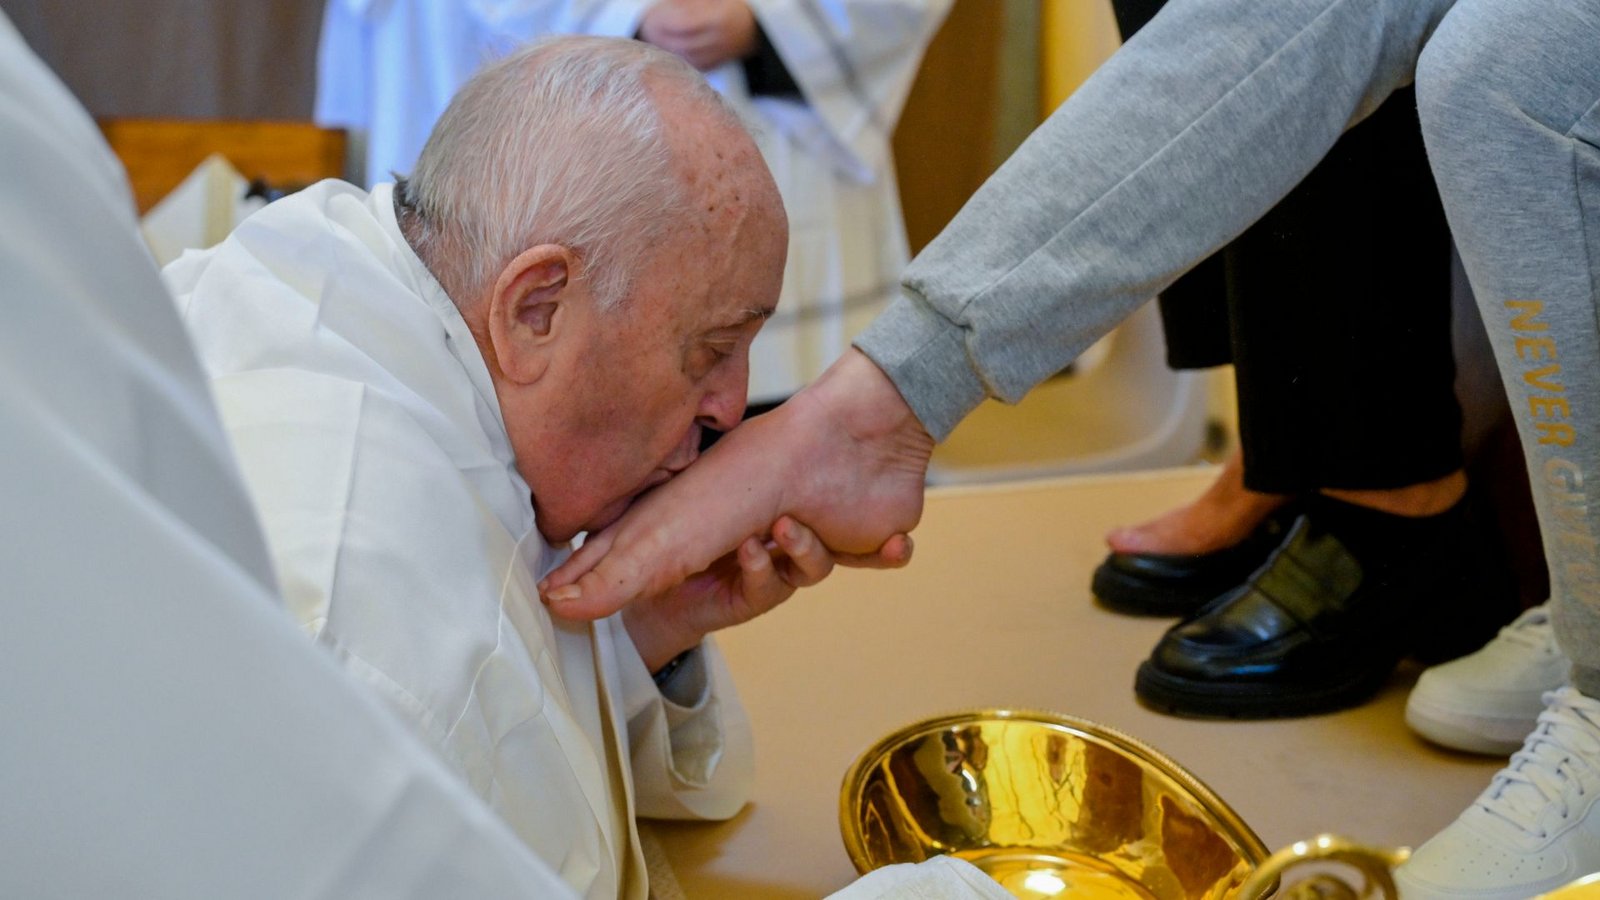 Papst Franziskus küsst den Fuß von einer weiblichen Insassin des Rebibbia-Gefängnisses.Foto: Vatican Media/AP/dpa